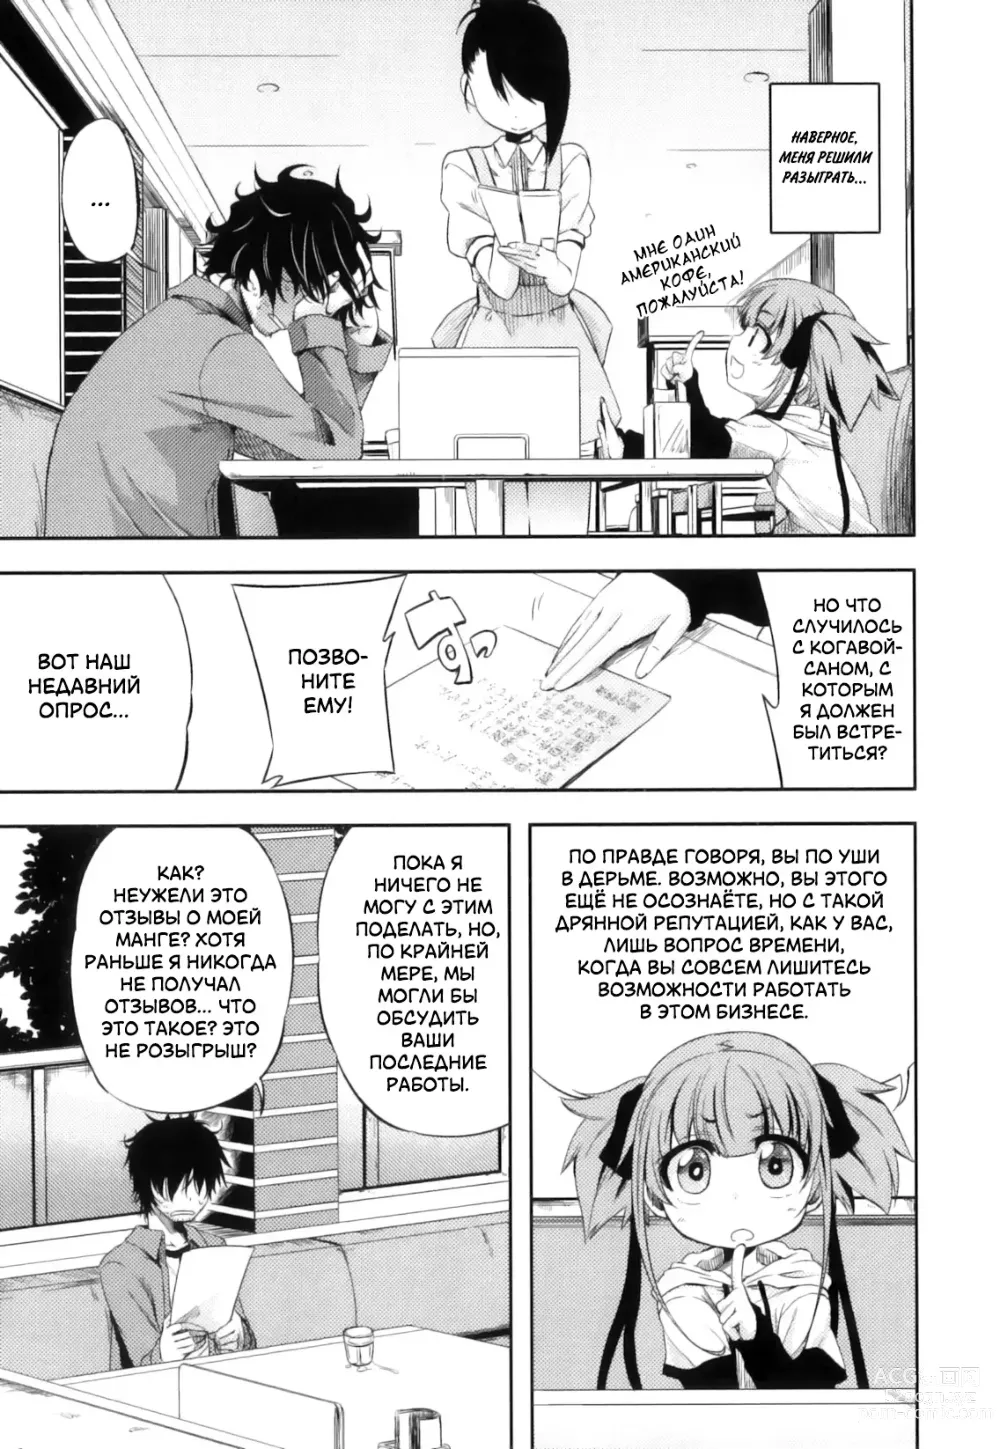 Page 3 of manga Это просто нереально!